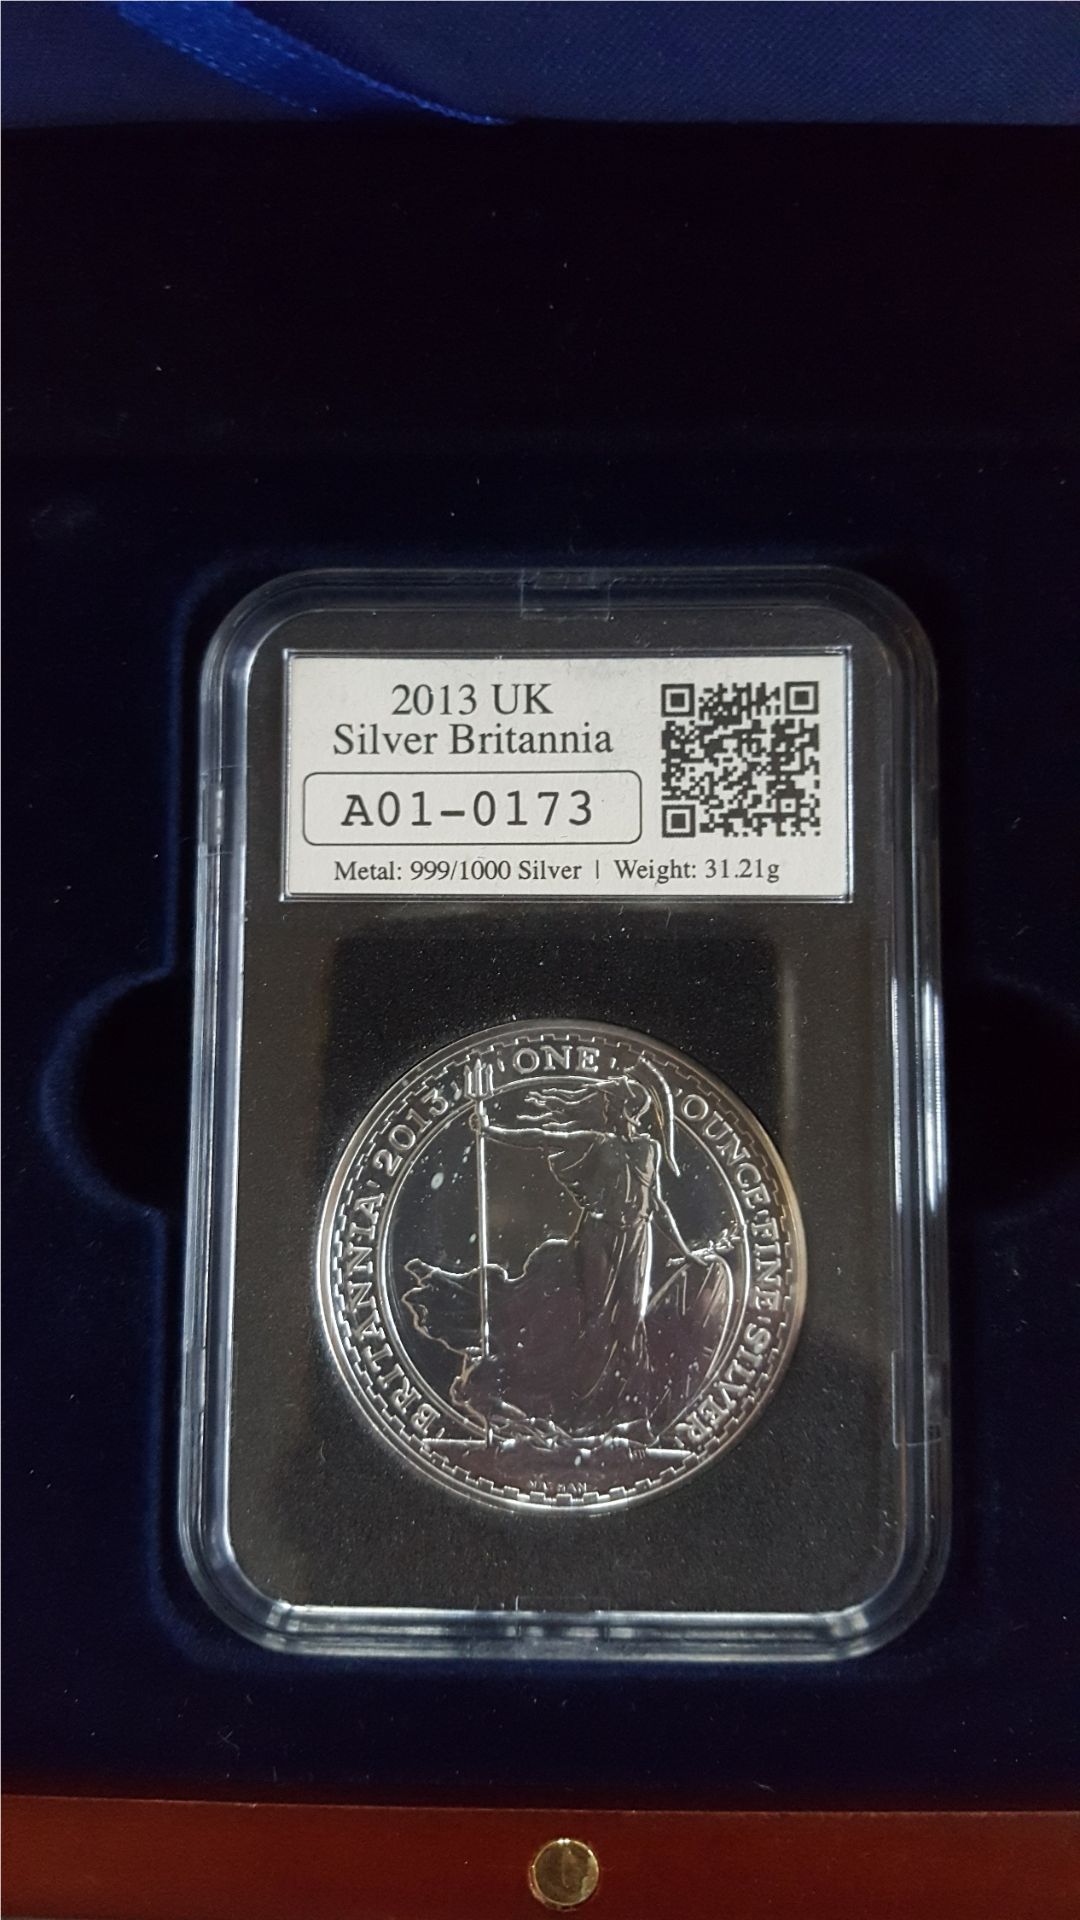 Collectable Coin 2013 UK Silver Britannia A01-0173 £2 Coin .999 Silver